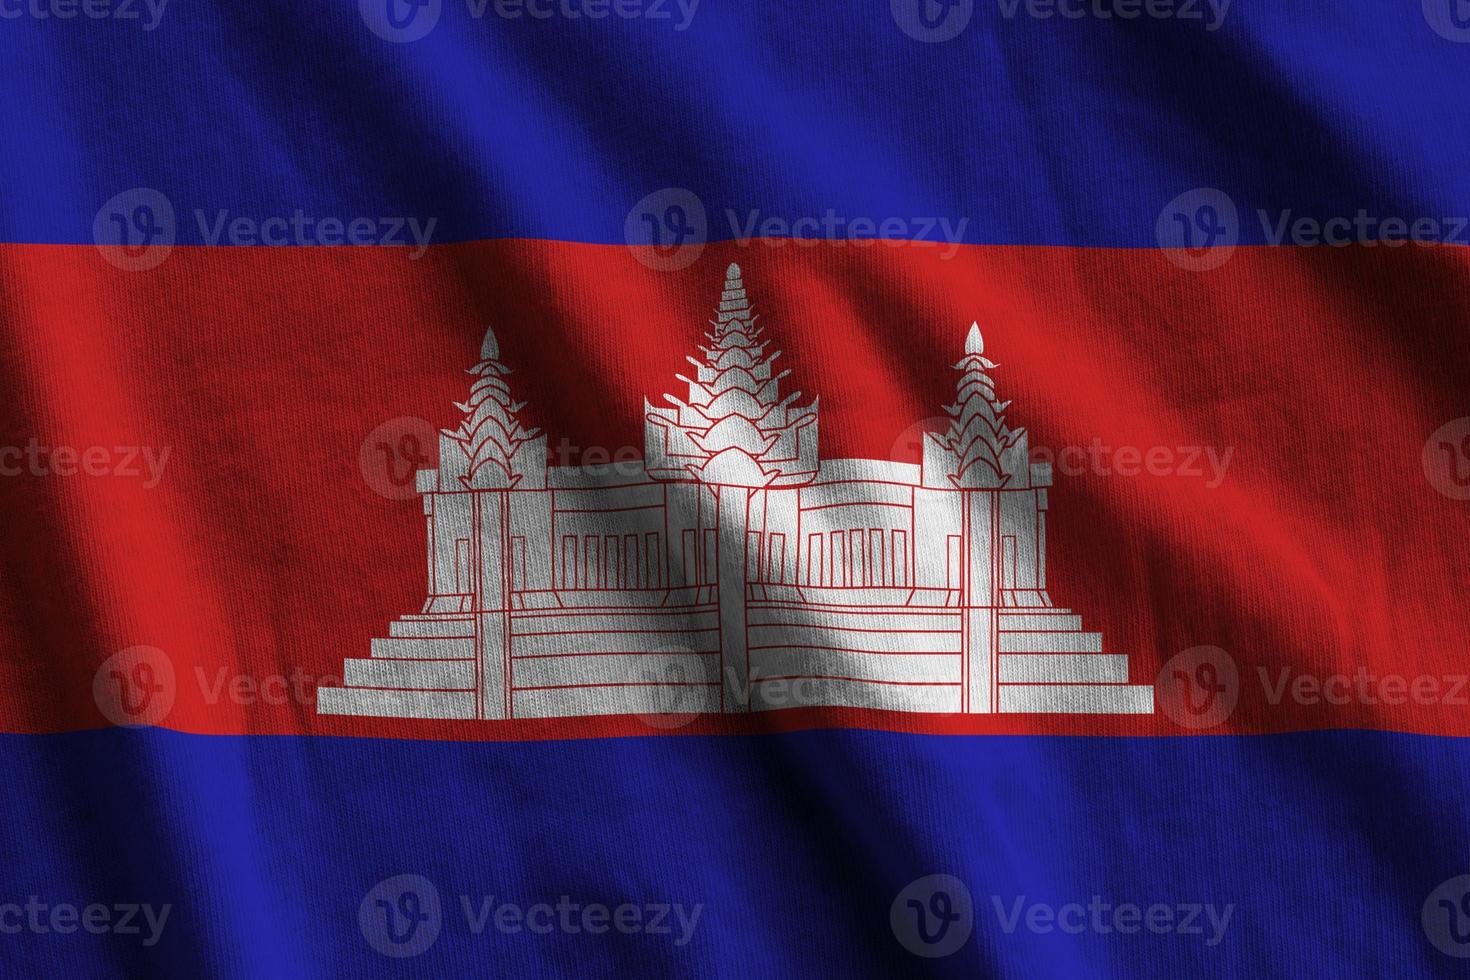 Cambodja vlag met groot vouwen golvend dichtbij omhoog onder de studio licht binnenshuis. de officieel symbolen en kleuren in banier foto